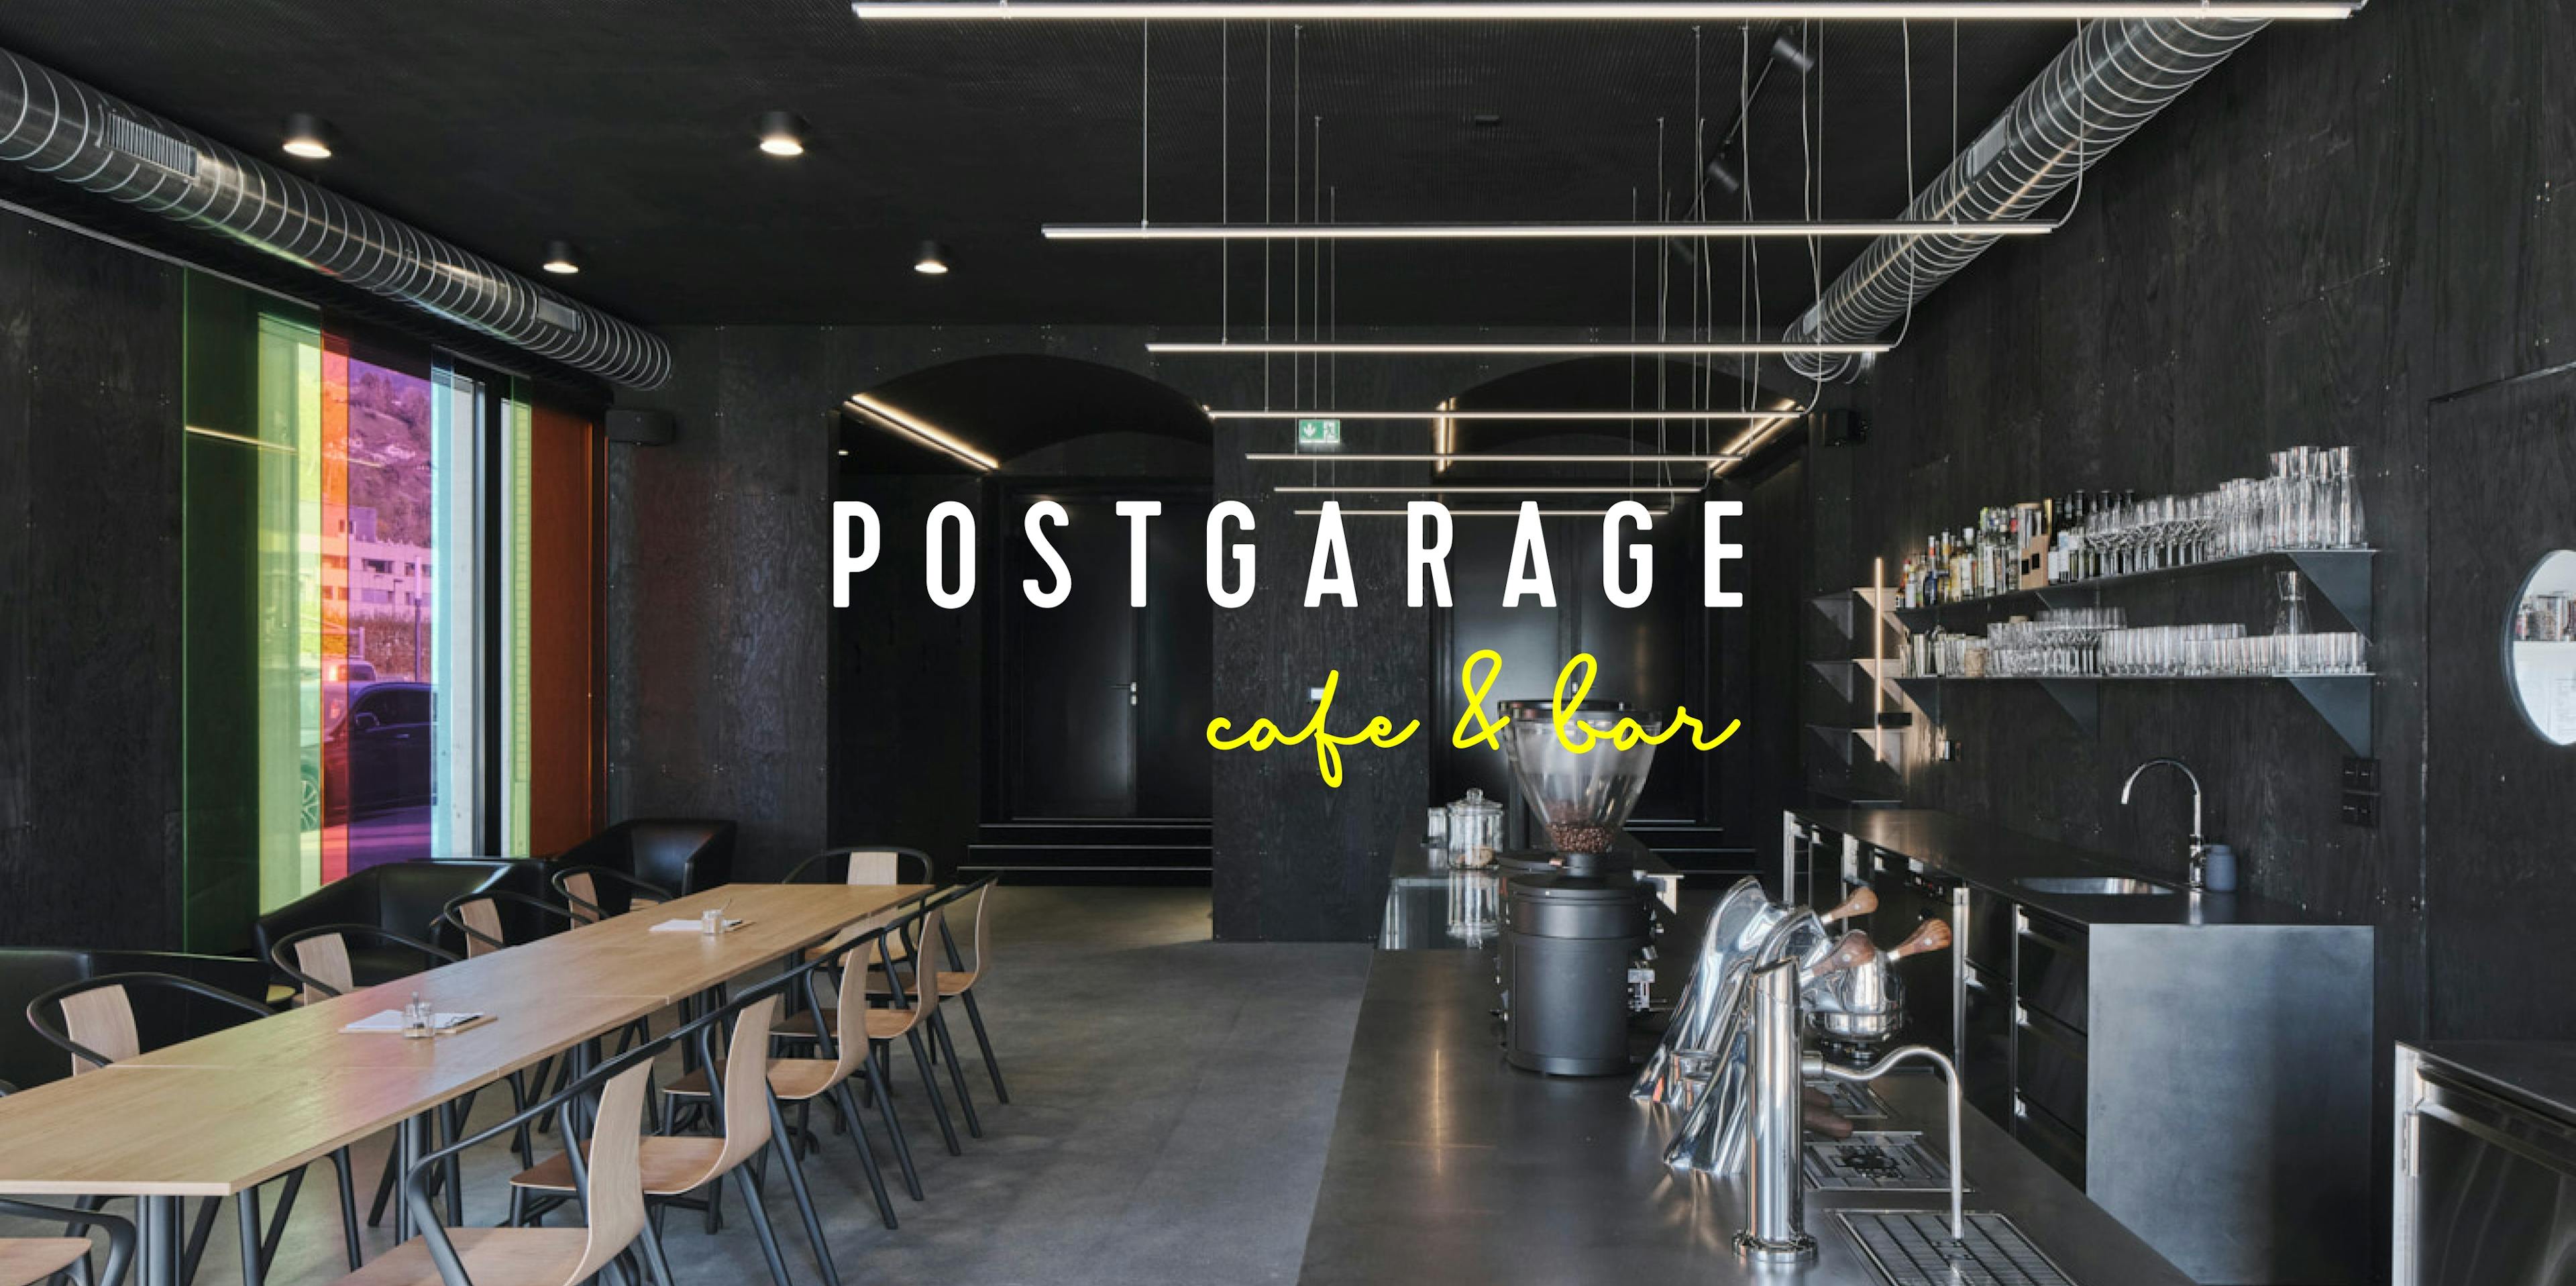 Bild der Postgarage mit Überlagerung des Logos der Postgarage cafe&bar © gm gobiq